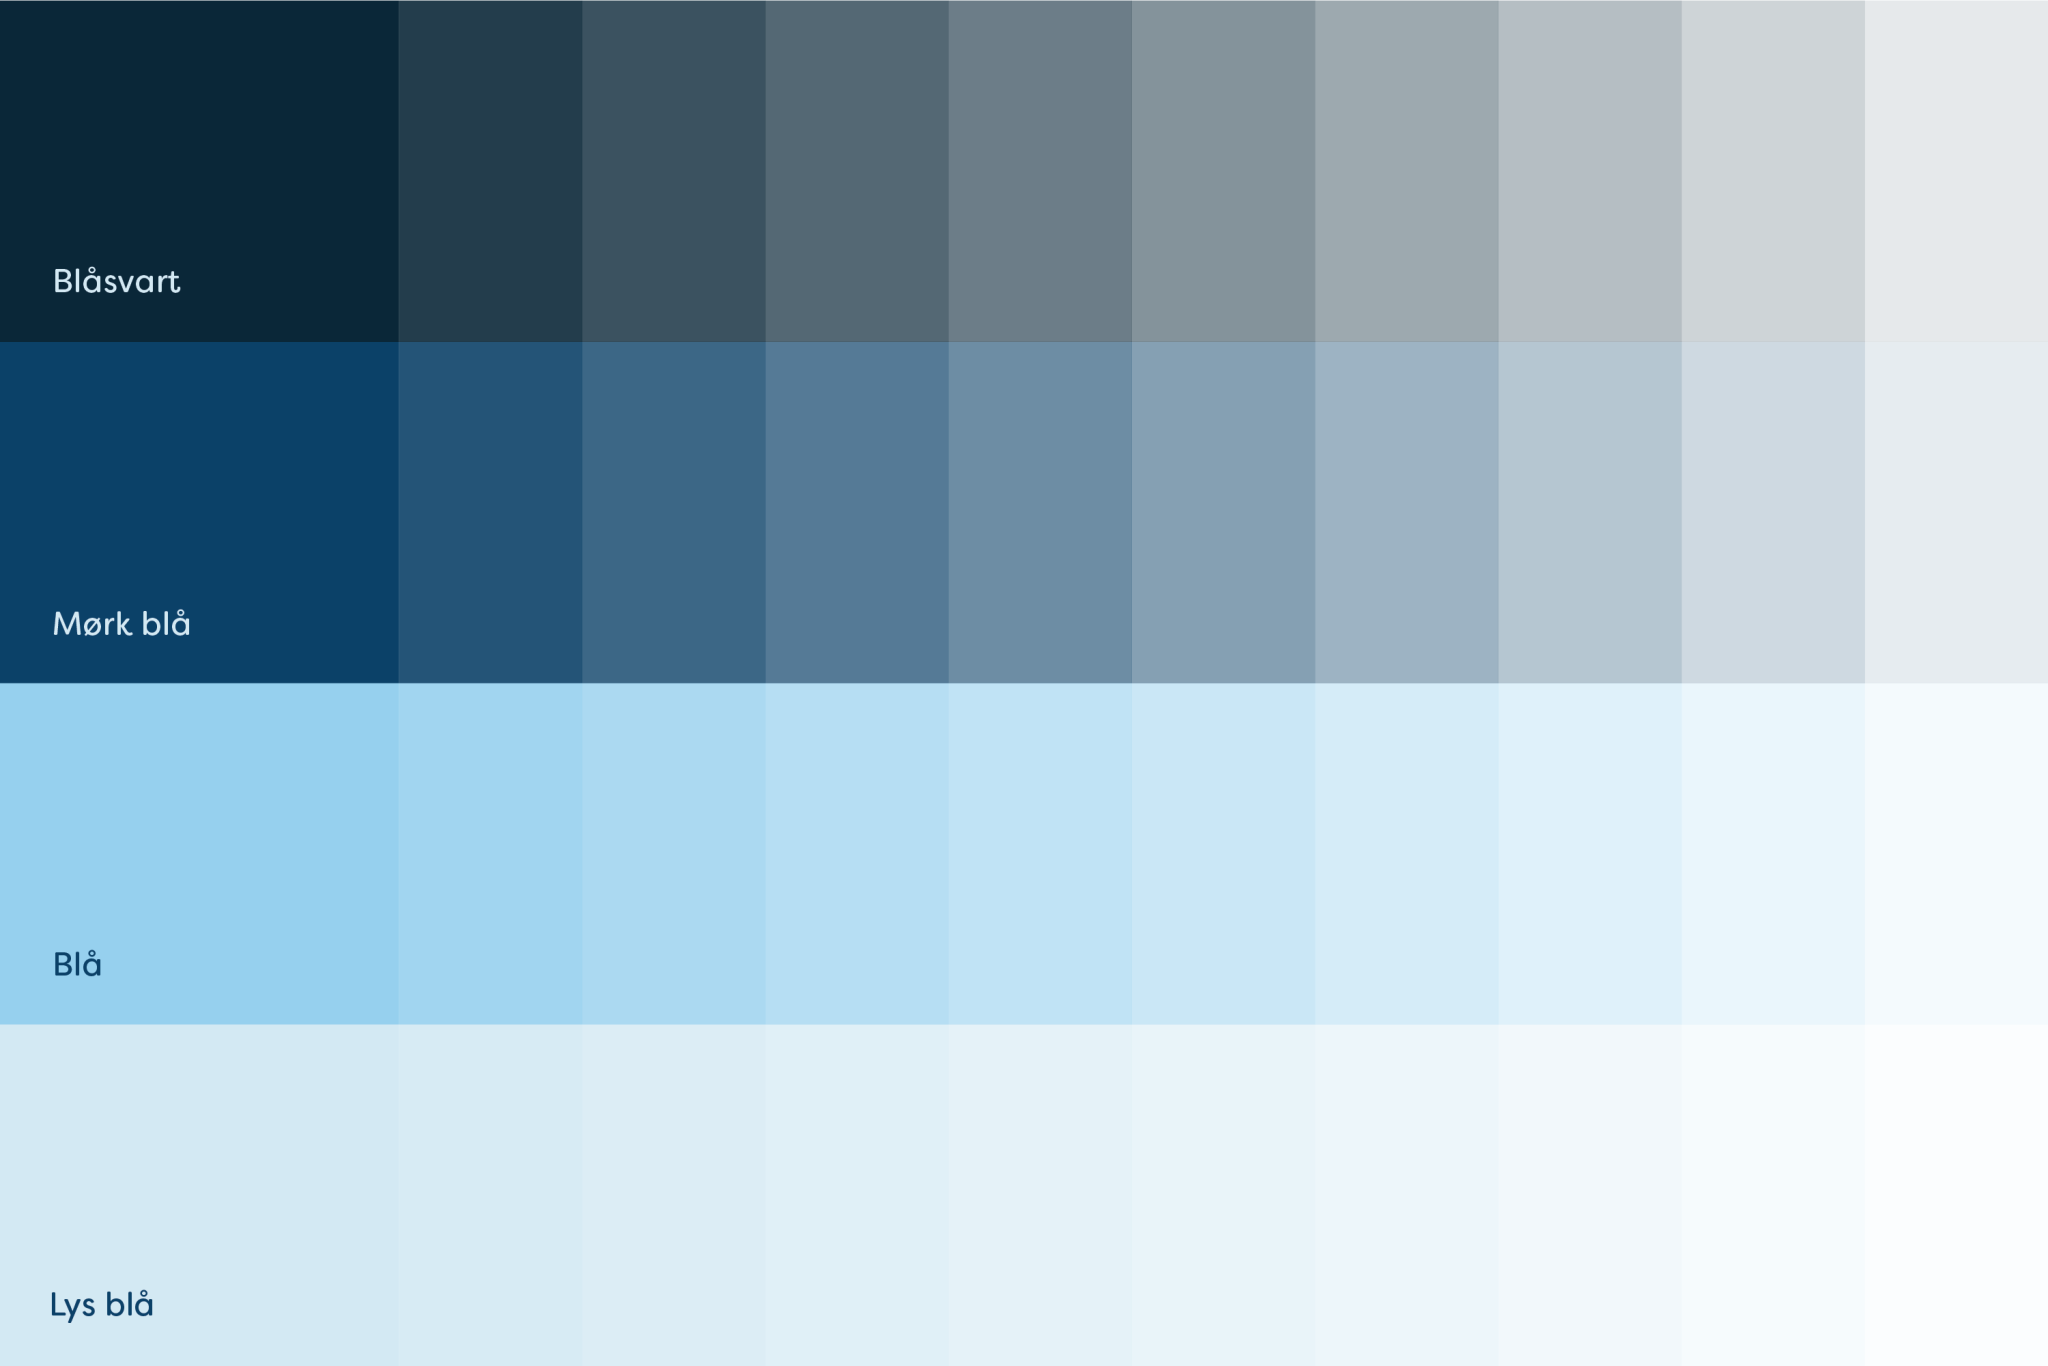 Bilde av tannhelselaget sin fargepalett med ulike toner av blått